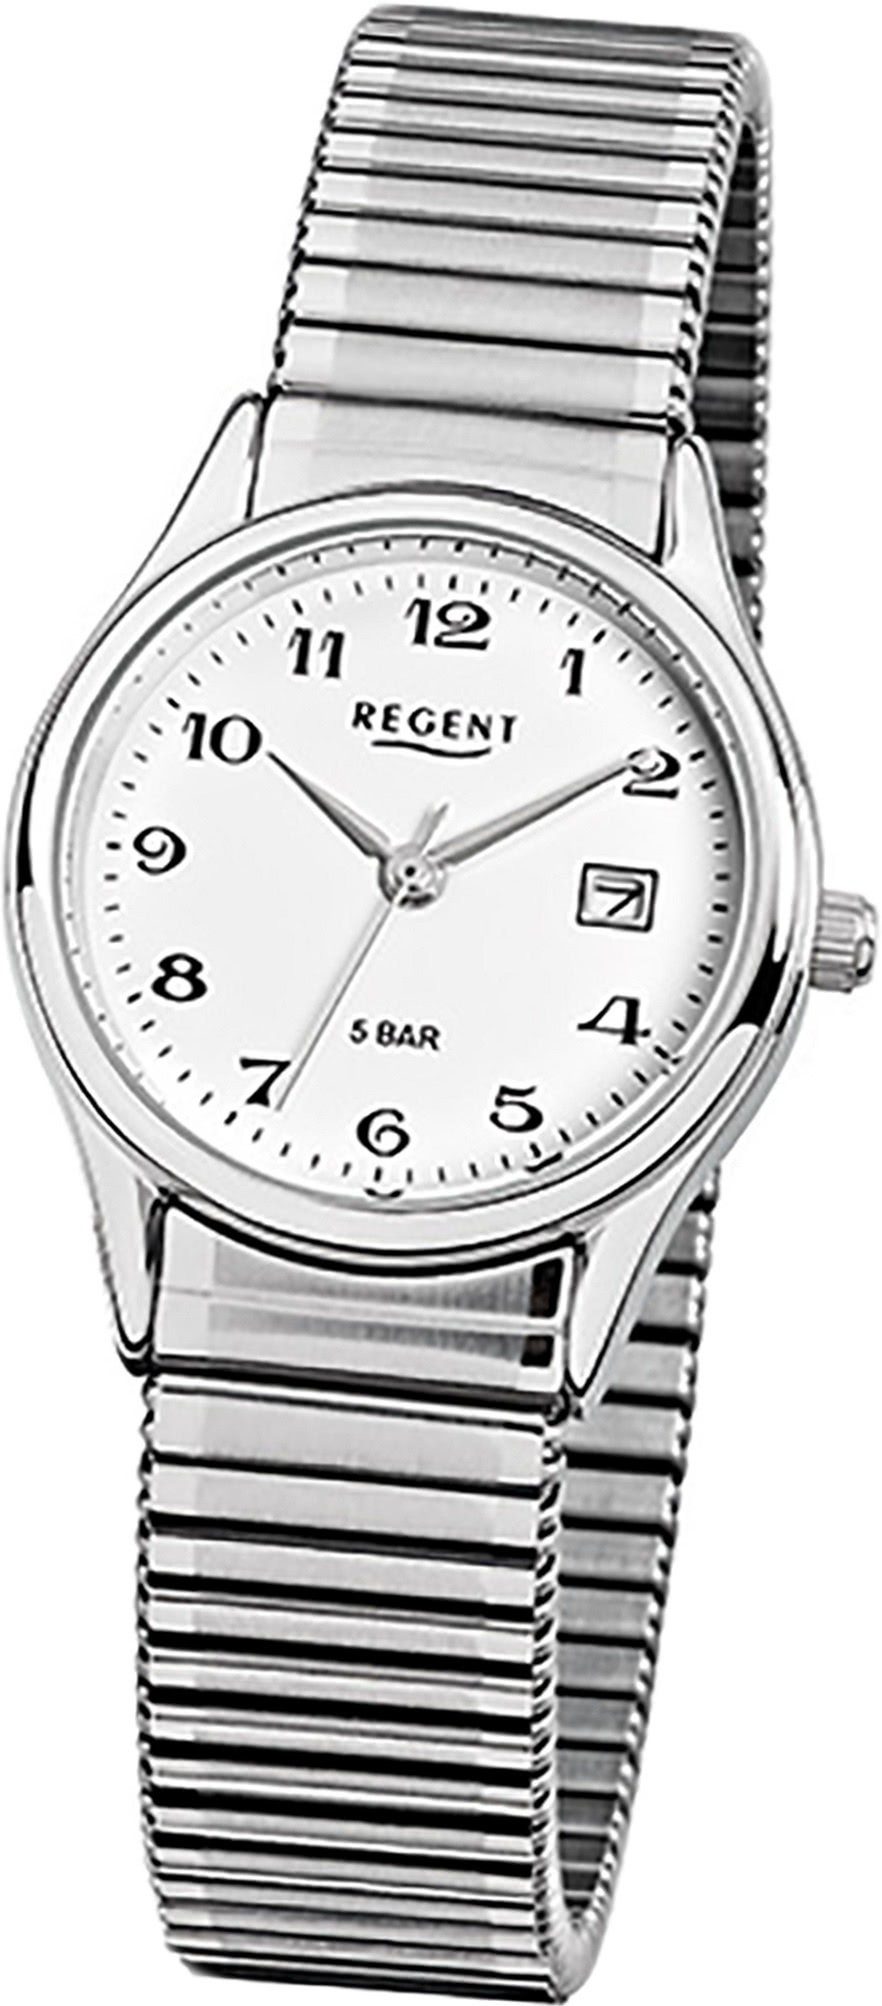 Regent Quarzuhr Regent Stahl Damen-Herren Uhr F-893, Damen, Herrenuhr mit Edelstahlarmband, rundes Gehäuse, klein (ca. 29mm